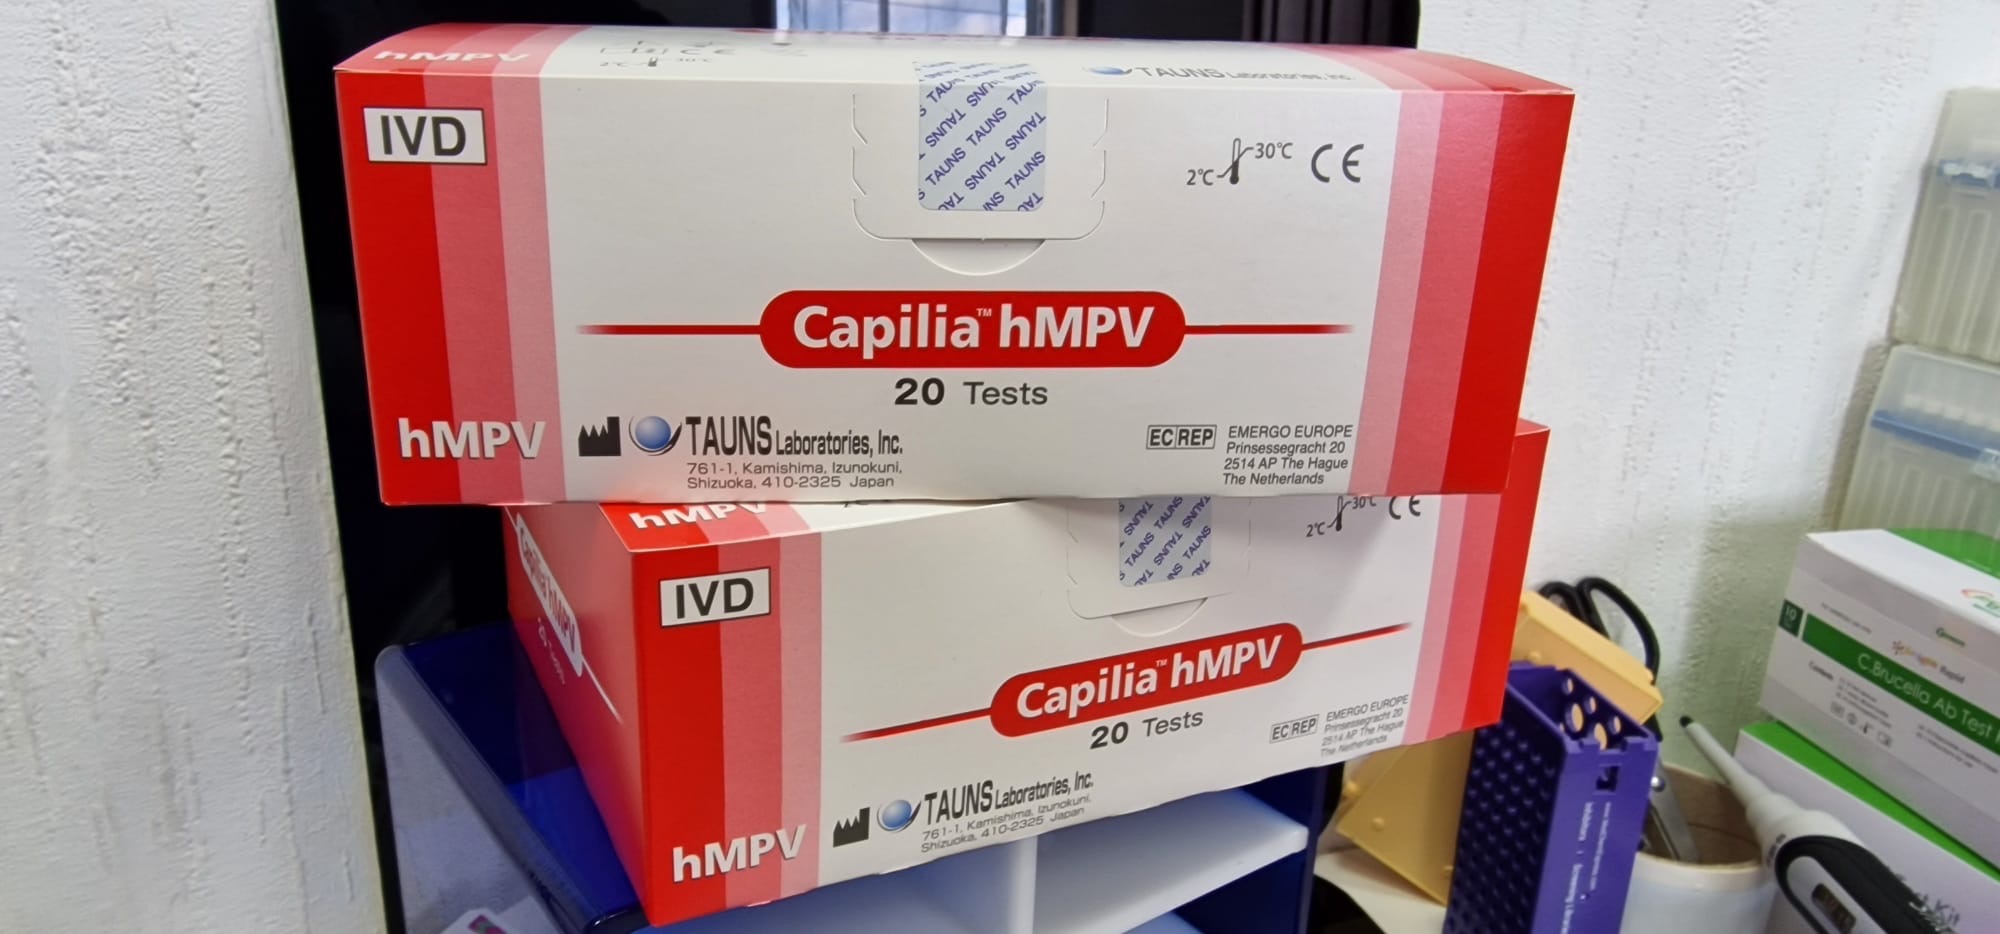 Capilia hMPV kit